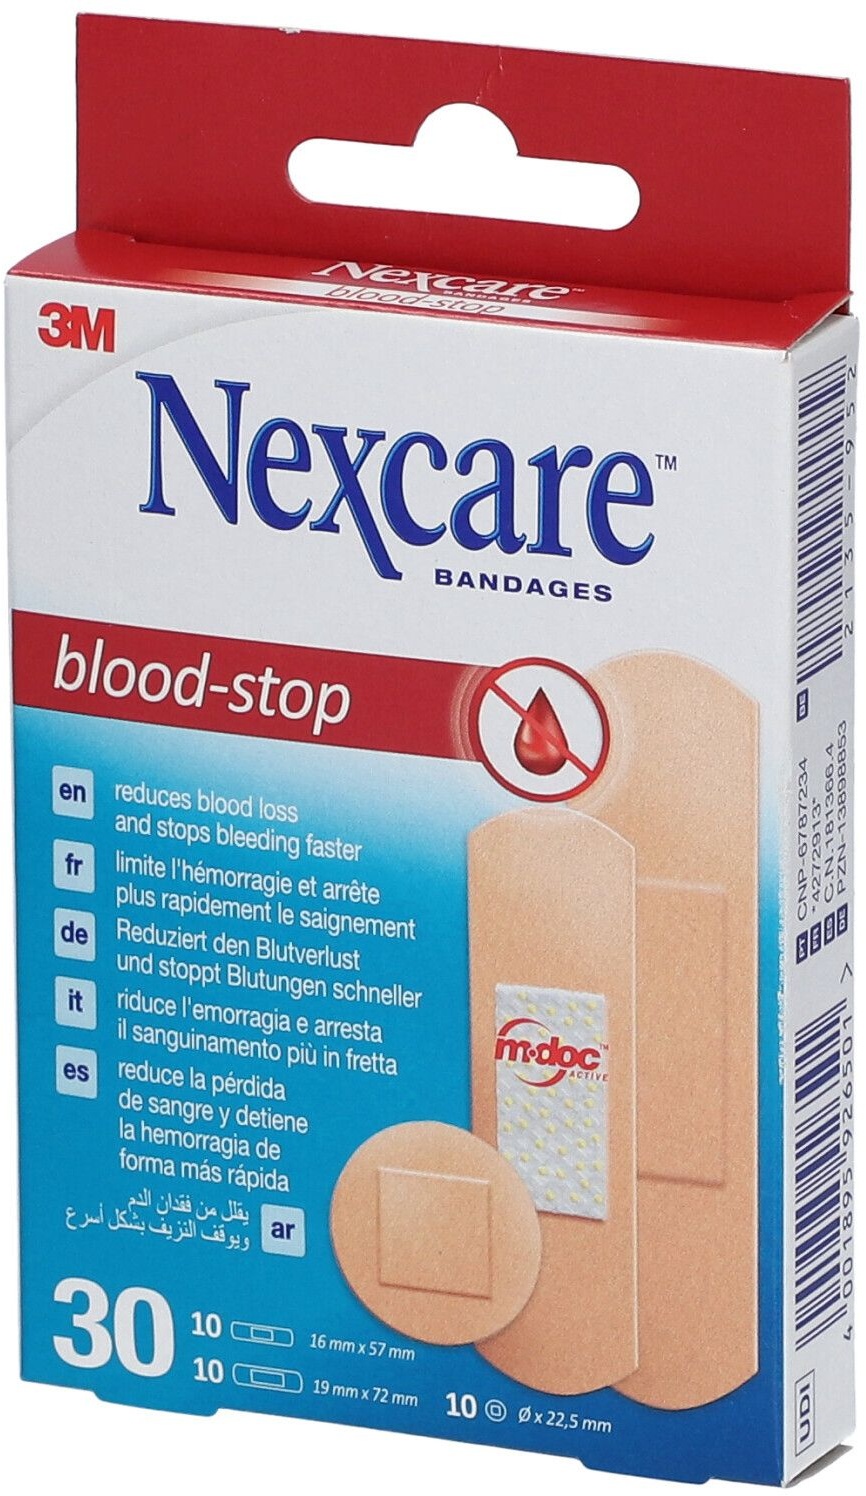 3M NexcareTM Blood Stop Pansements hémostatiques 30 pc(s) pansement(s)